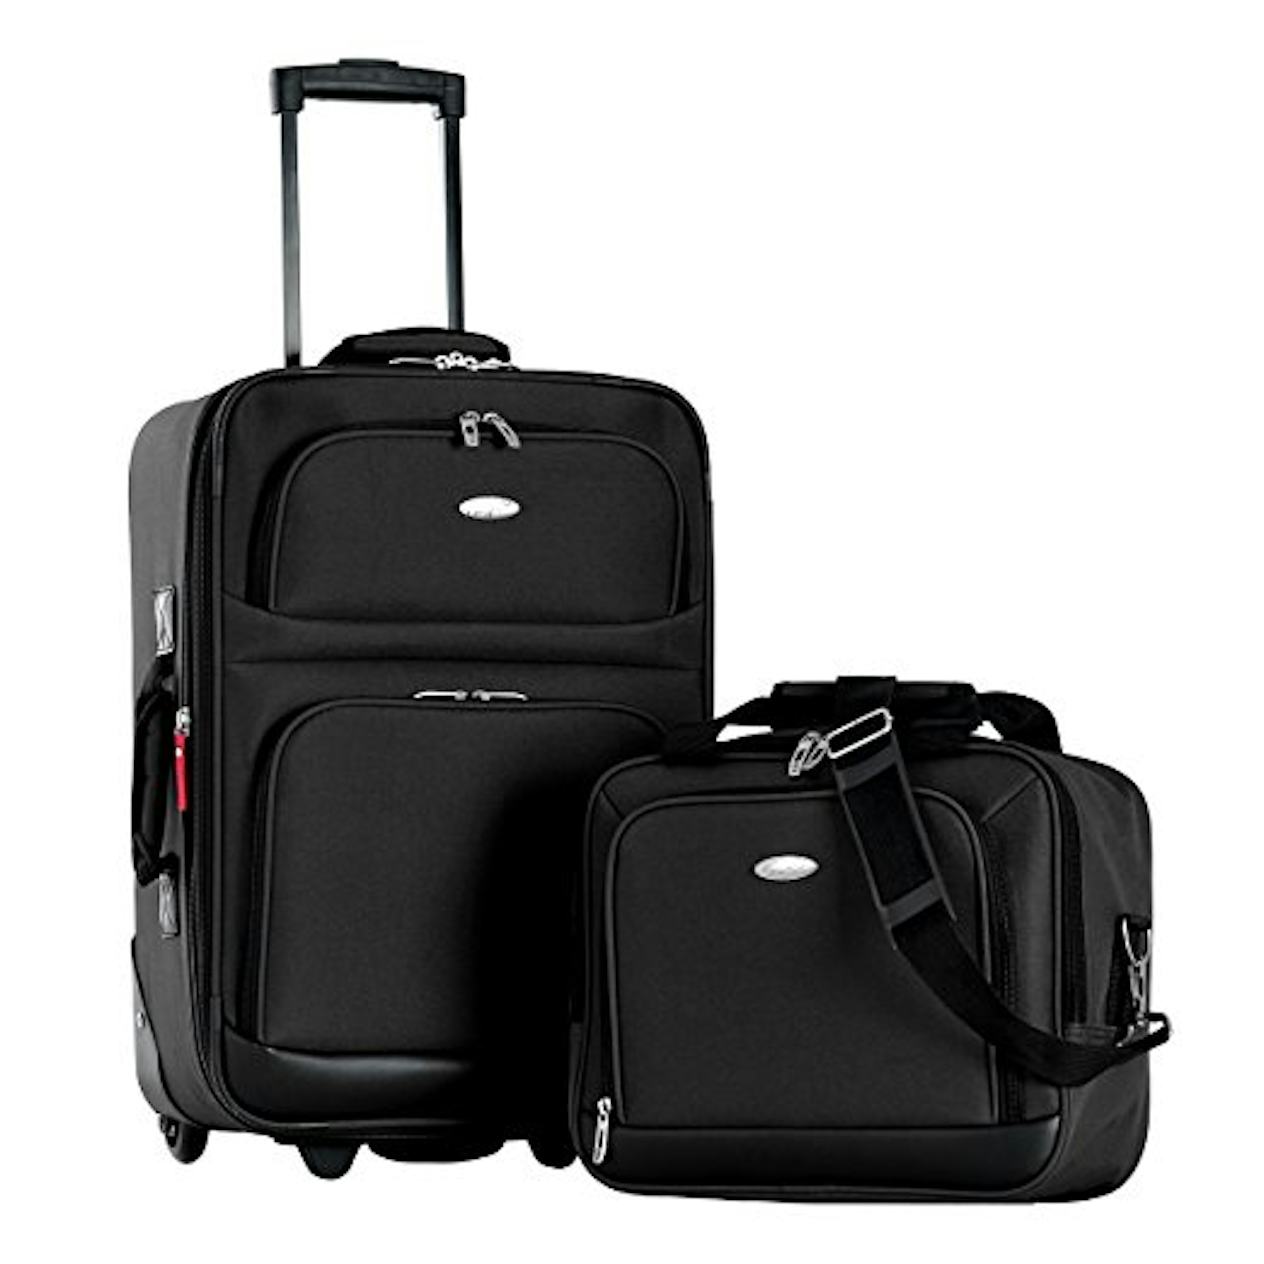 Трэвел 2. Carry on Baggage. H2 Travel Luggage. Travel 2 grsde. Сумка мужская copenhagen2 Luggage цена.